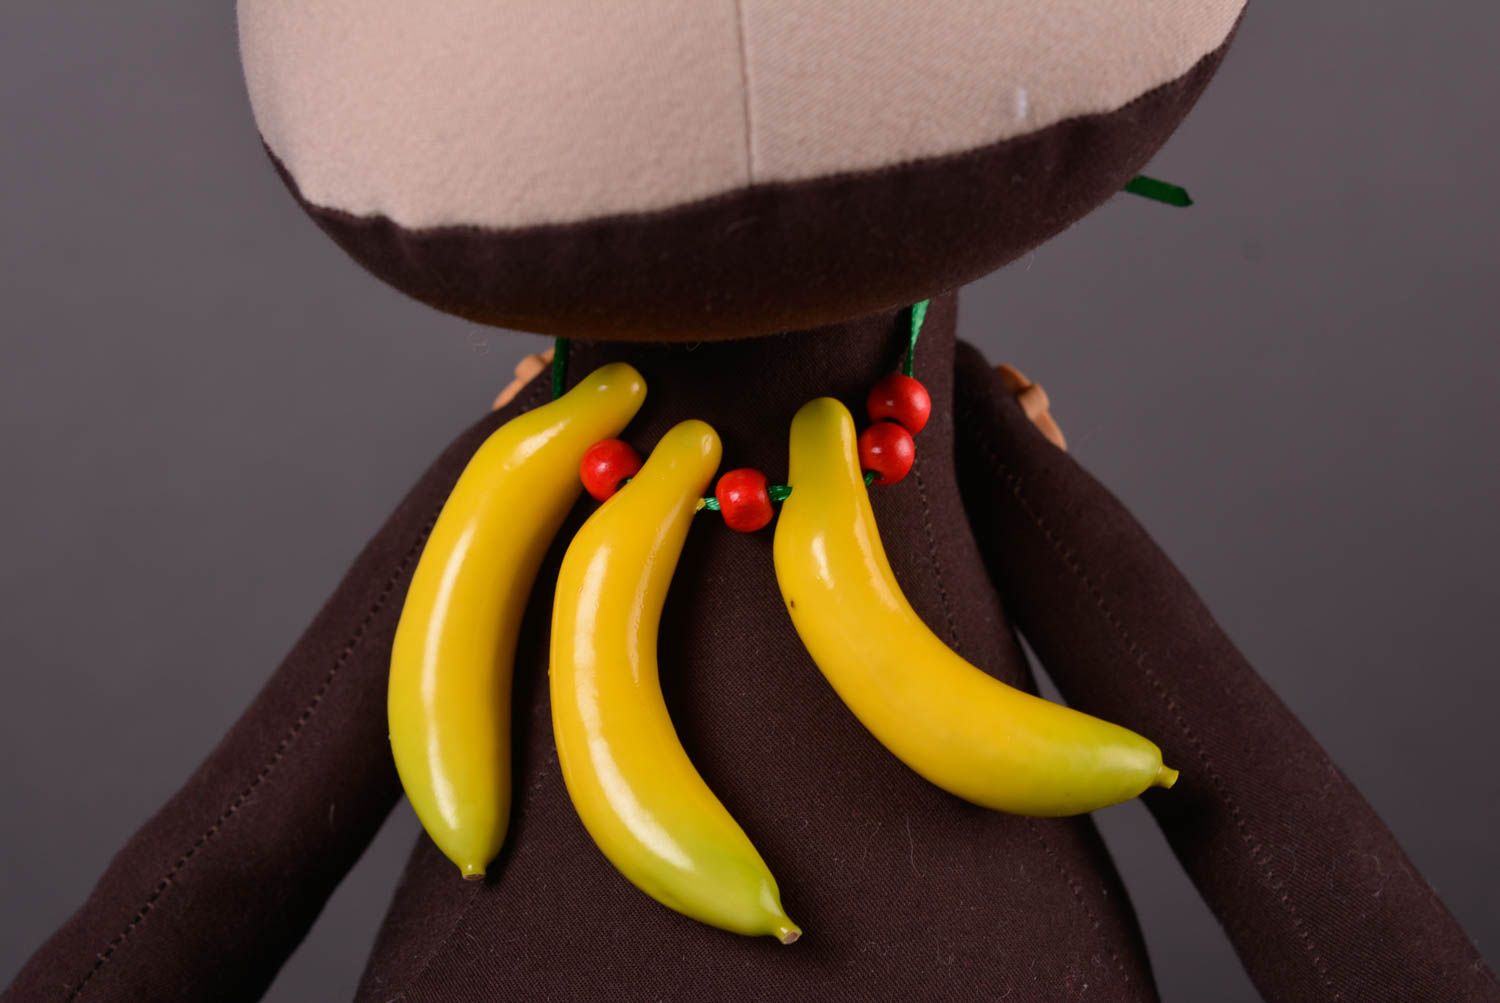 Игрушка обезьянка ручной работы детская игрушка из ткани мягкая игрушка фото 4